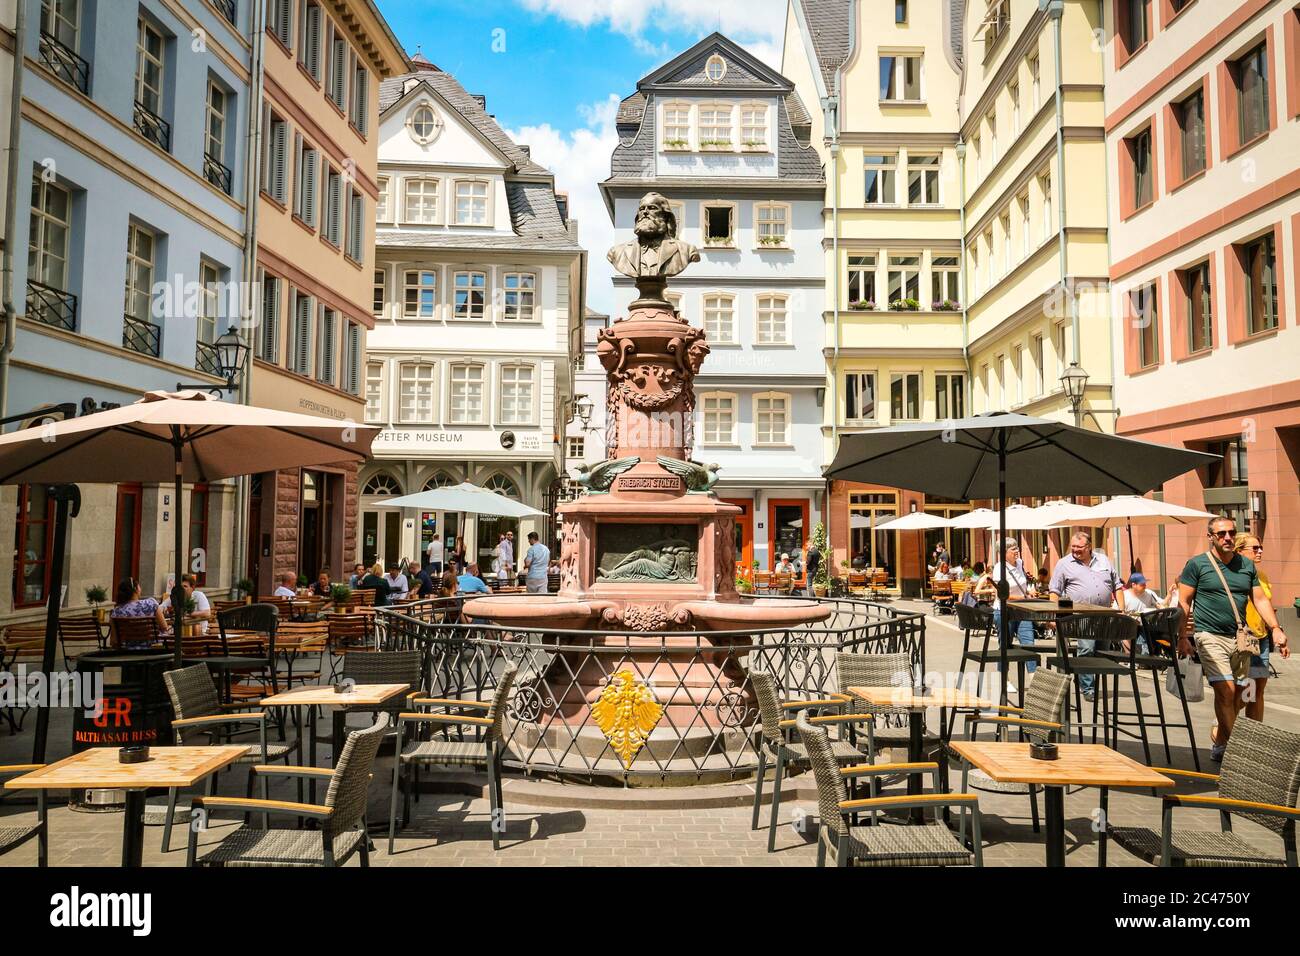 Place Hühnermarkt avec fontaine Stoltze-Brunnen, centre de la nouvelle vieille ville reconstruite de Francfort-sur-le-main, Hesse, Allemagne. Banque D'Images